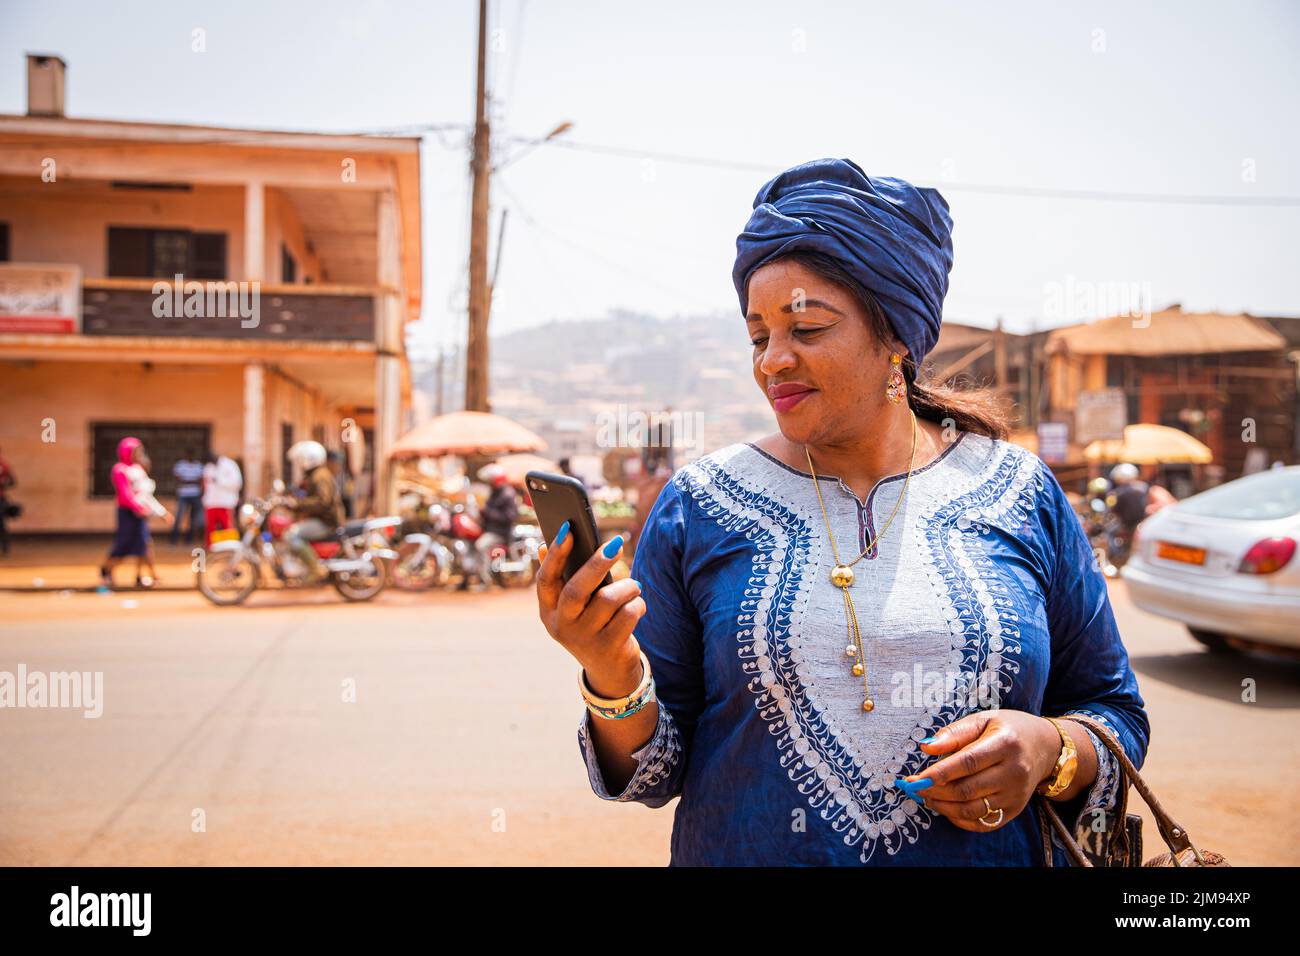 Una donna africana usa il suo smartphone mentre si trova nel centro della città, indossa abiti tradizionali africani Foto Stock